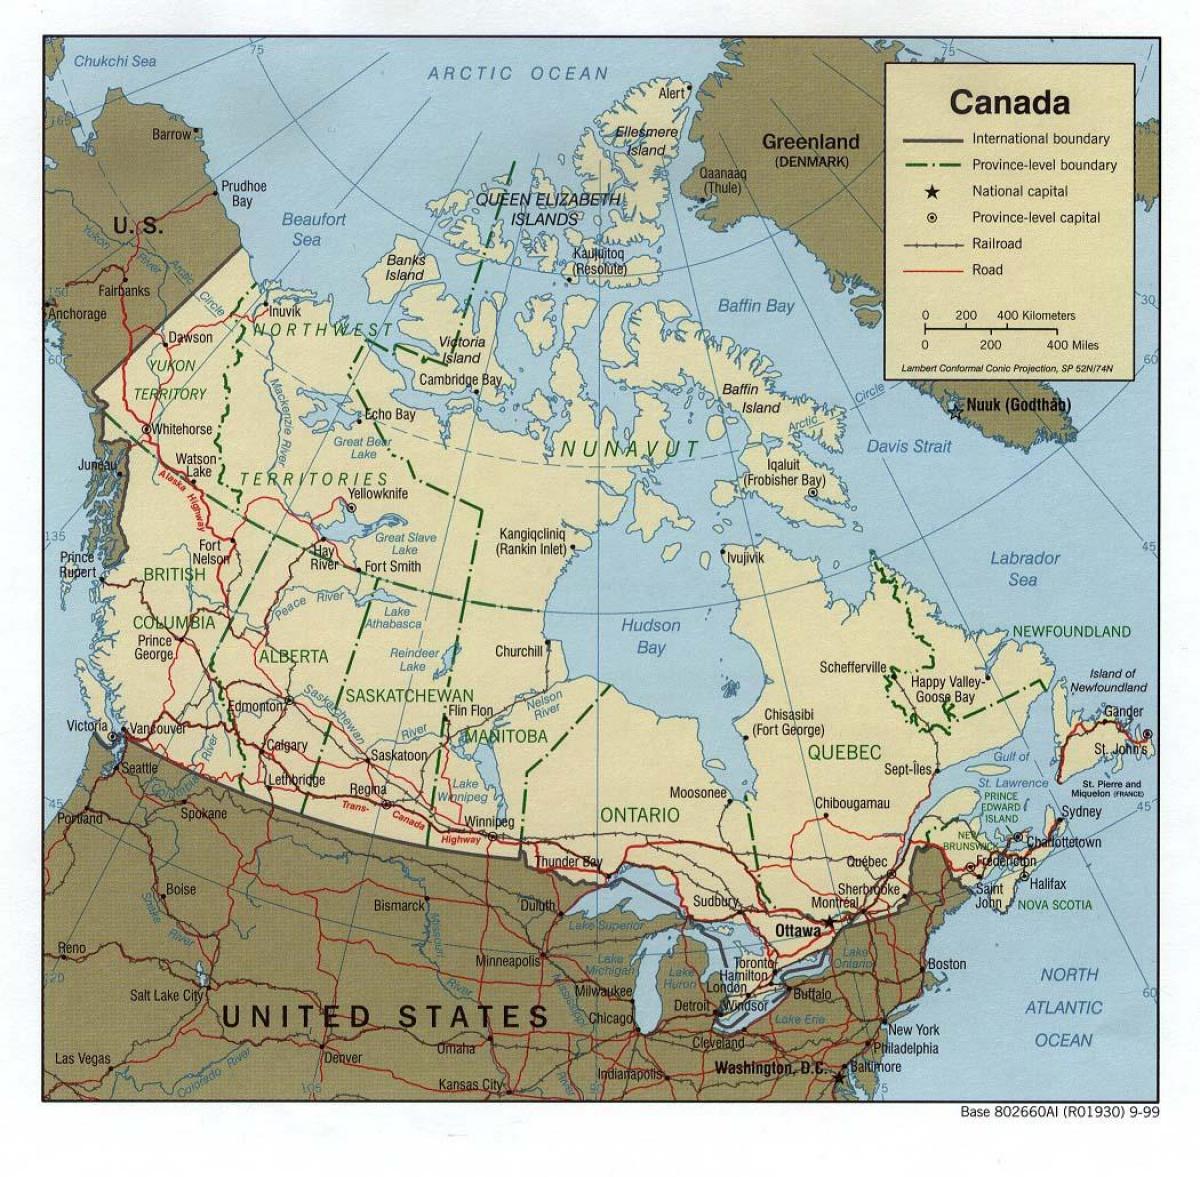 trans Canada highway carte